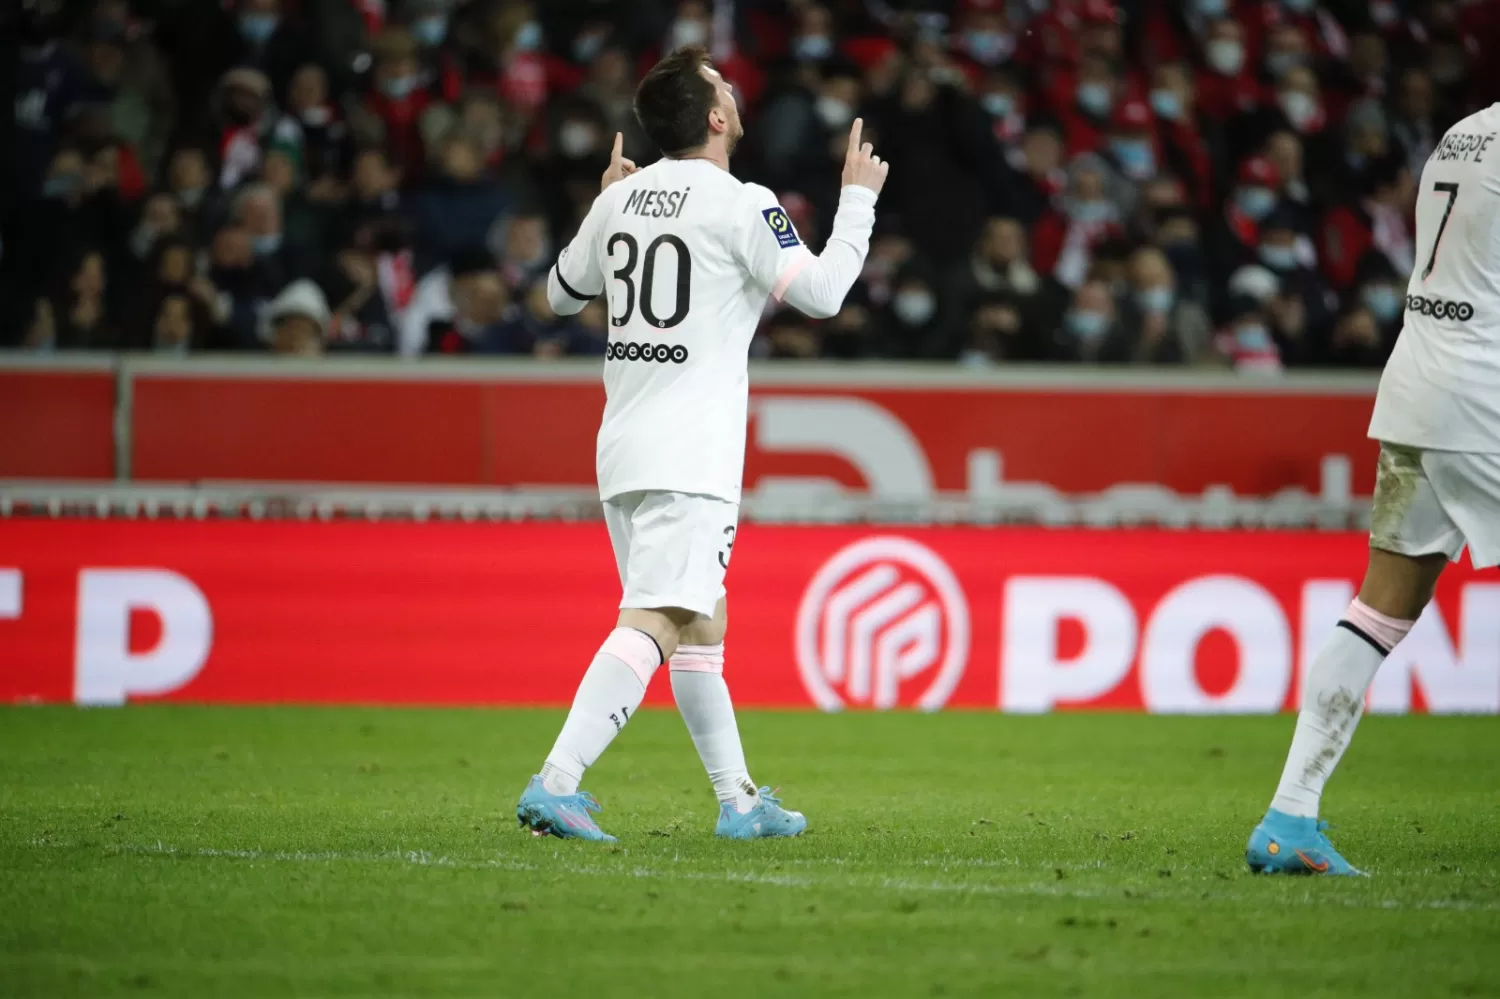 UN CLÁSICO. Messi festeja mirando al cielo. FOTO TOMADA DE TWITTER.COM/PSG_ESPANOL